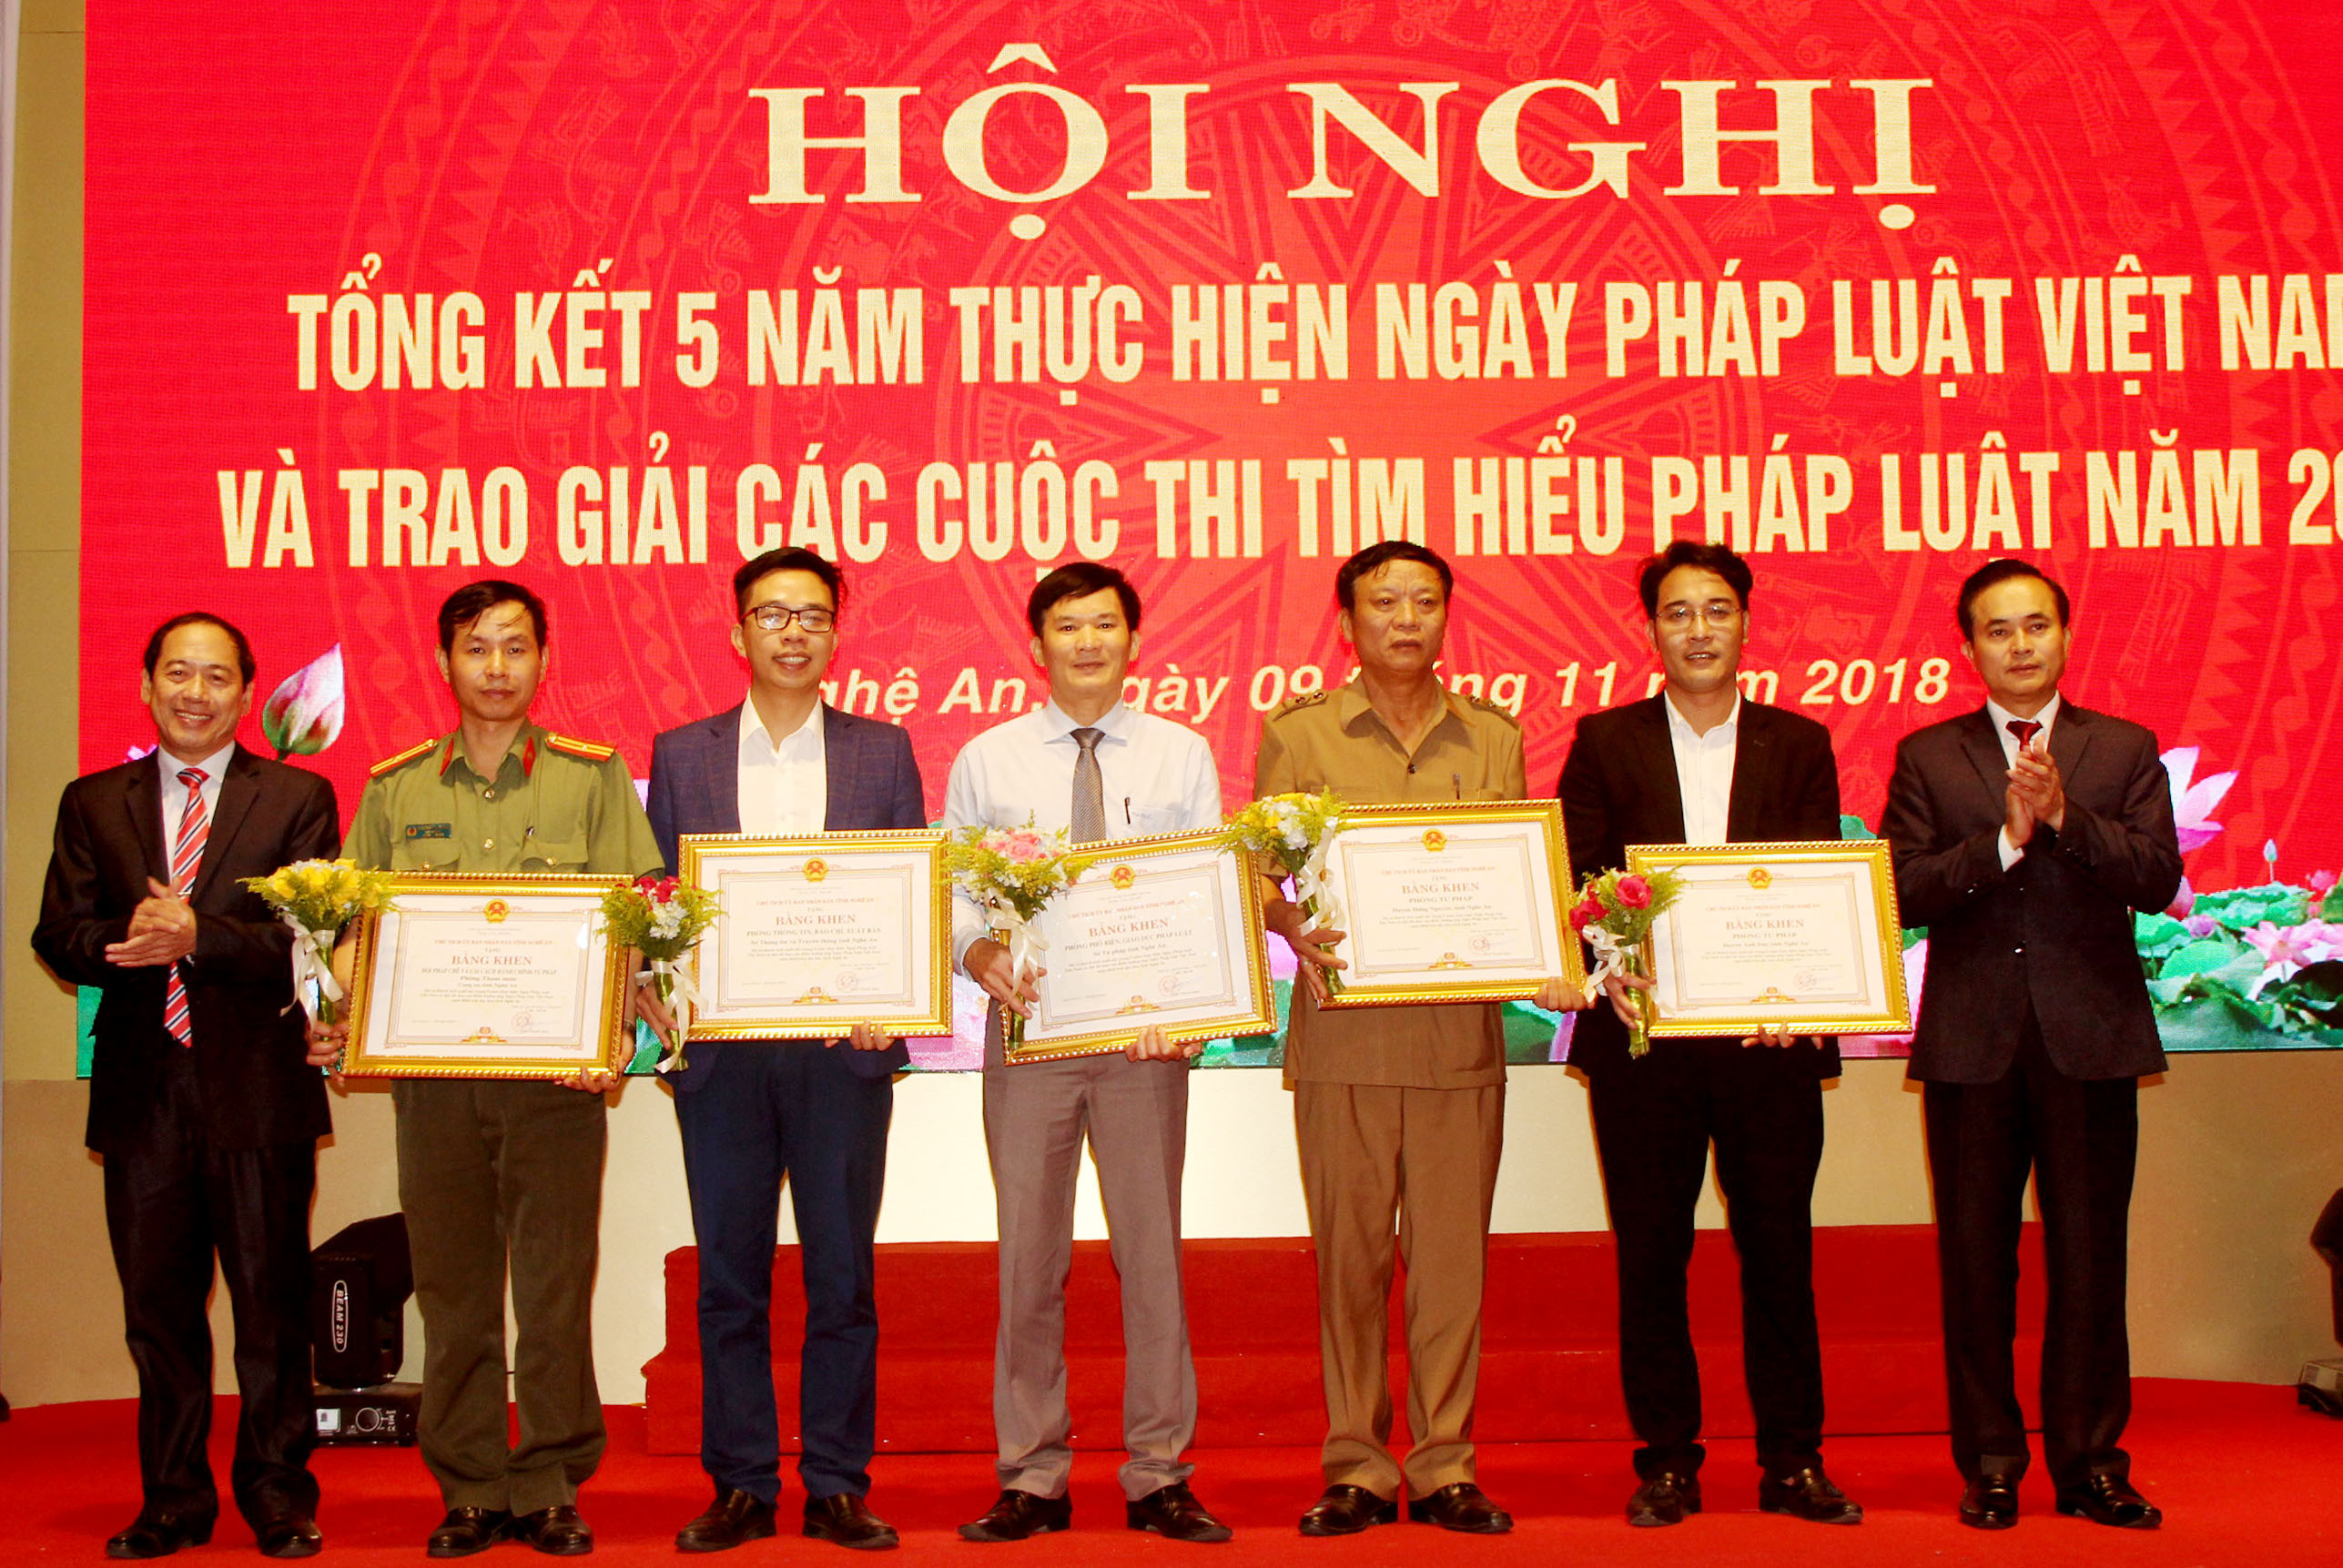 Đồng chí Lê Ngọc Hoa trao Bằng khen của UBND tỉnh cho 5 tập thể có thành tích trong 5 năm tổ chức Ngày Pháp luật Việt Nam. Ảnh: Phạm Bằng